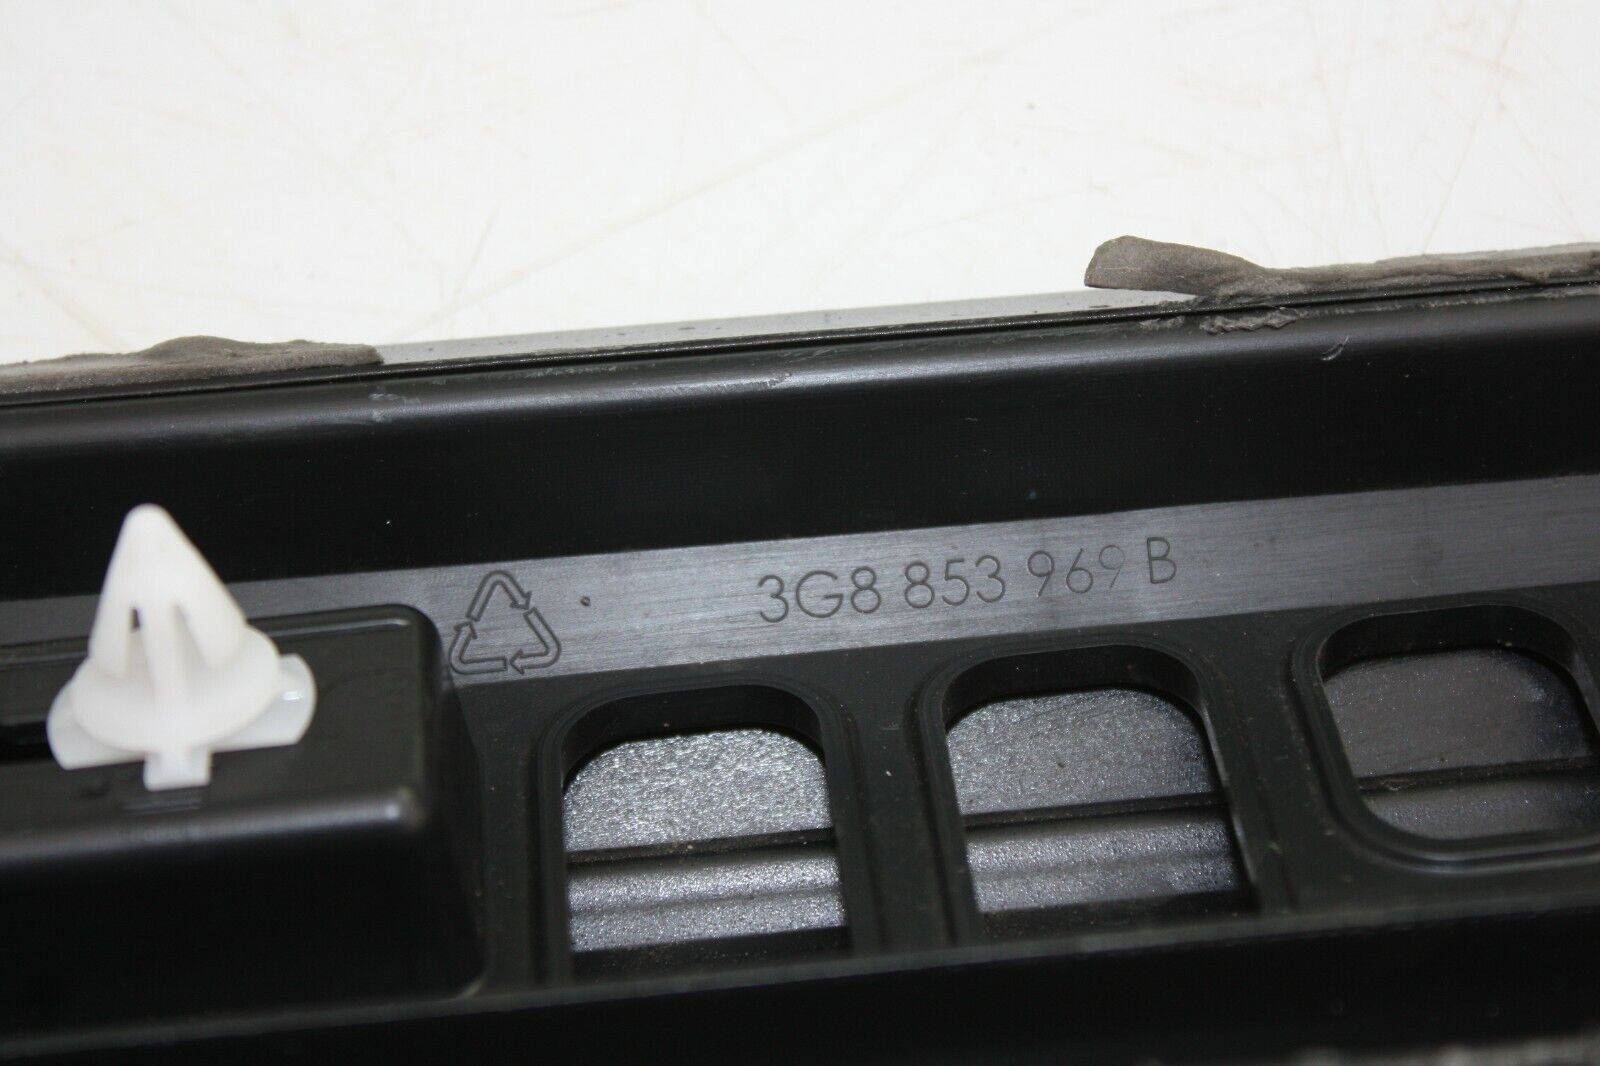 VW-Arteon-Front-Left-Side-Door-Moulding-3G8853969B-Genuine-175367544120-7